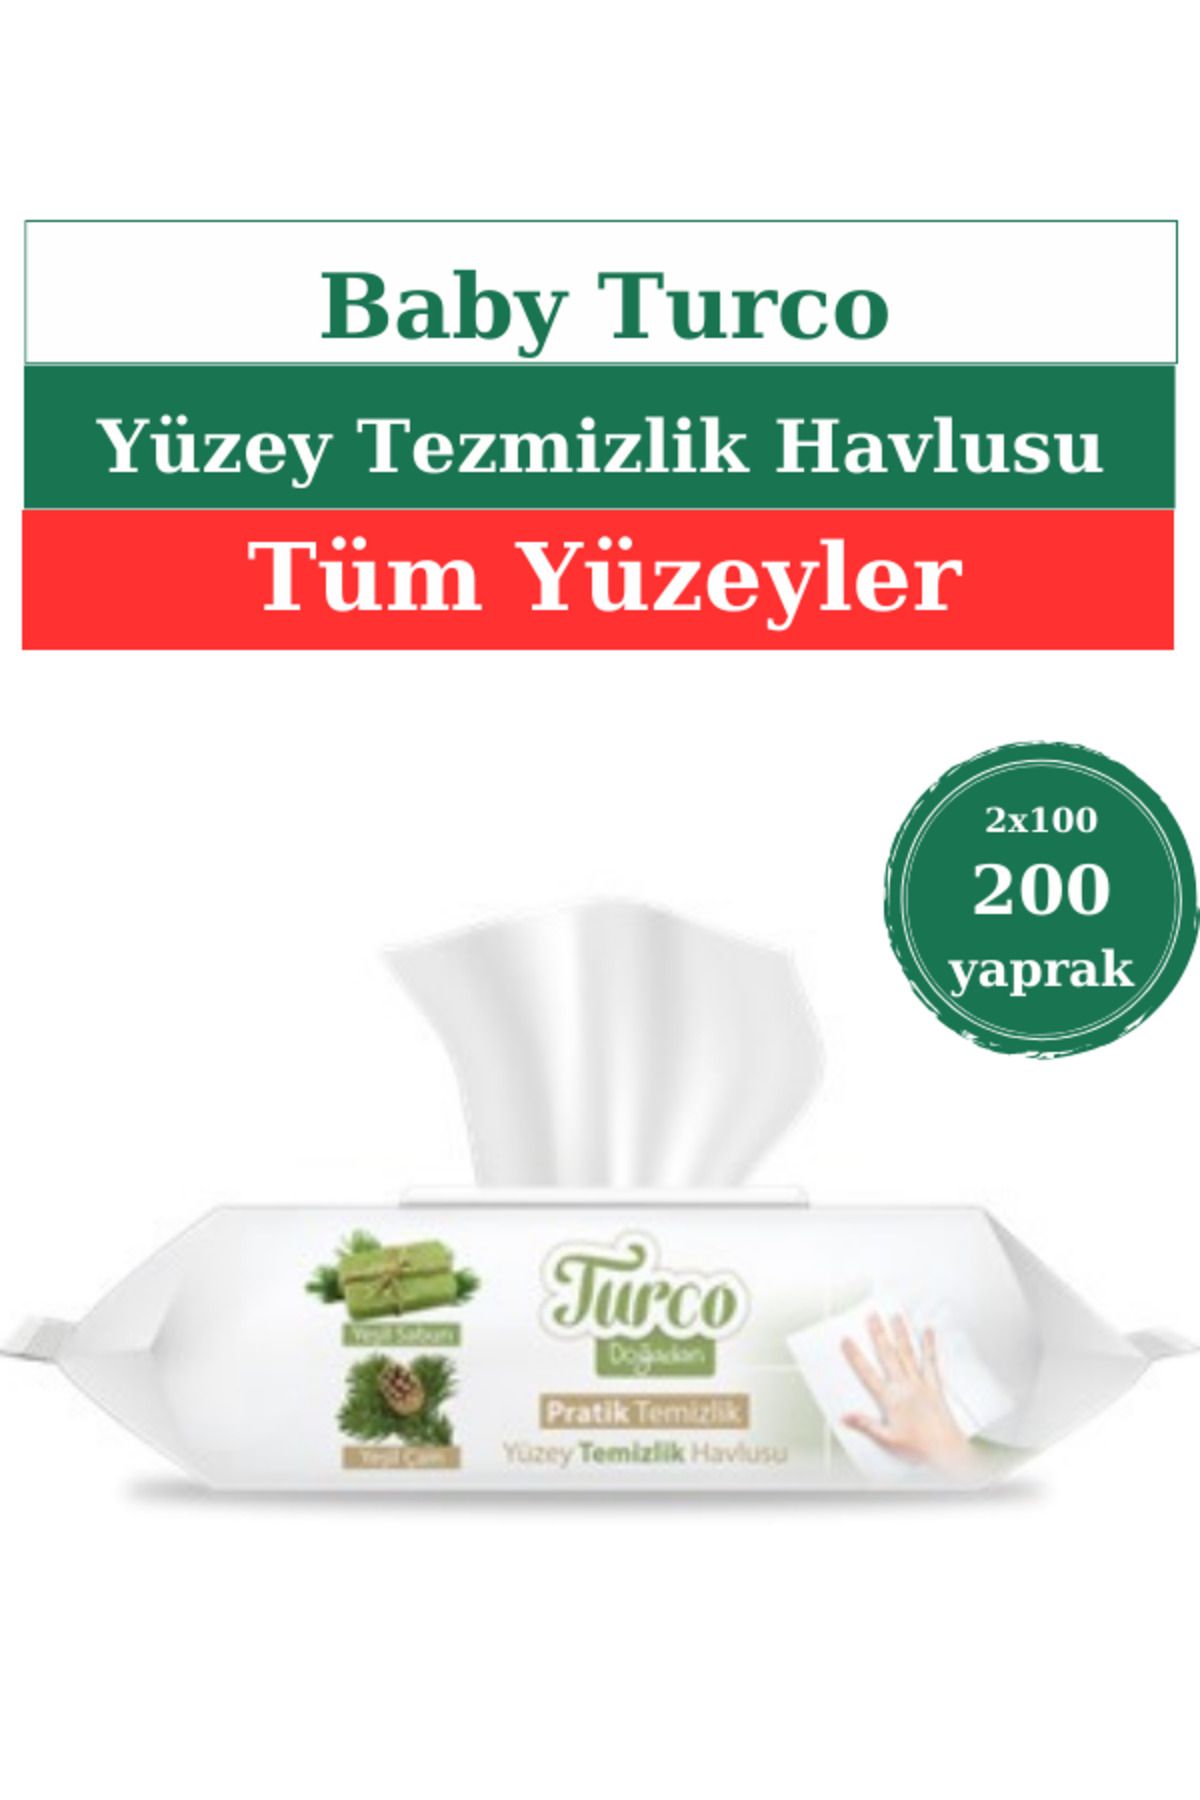 Turco Doğadan Pratik Temizlik Pratik Temizlik Yüzey Temizlik Havlusu 2x100 200 Yaprak